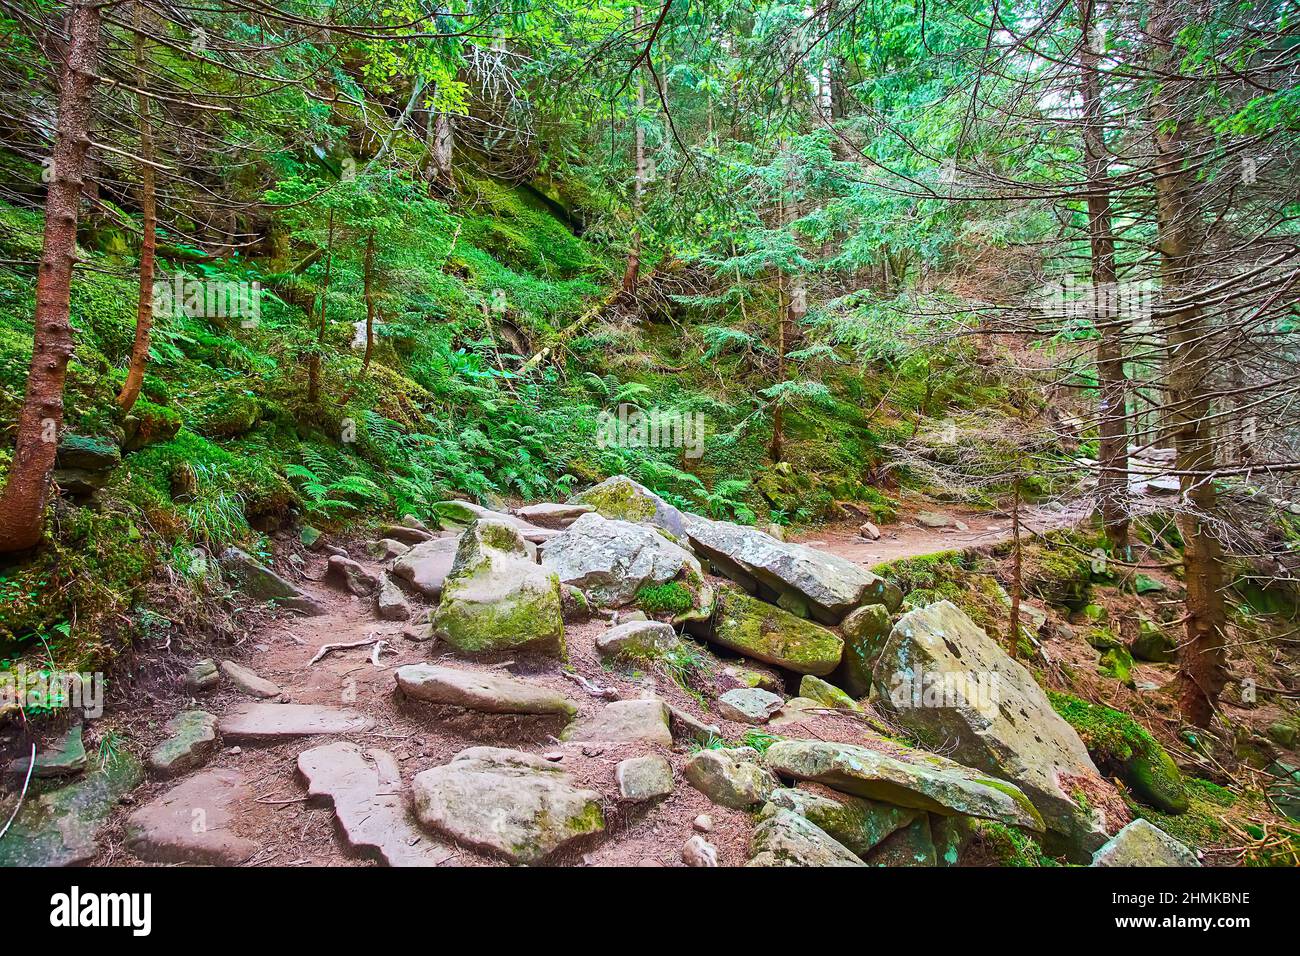 Le sentier forestier avec de grands rochers de l'ancien talus crie pente, aujourd'hui couvert de forêt de conifères, Dzembronia, Carpates montagnes, Ukraine Banque D'Images